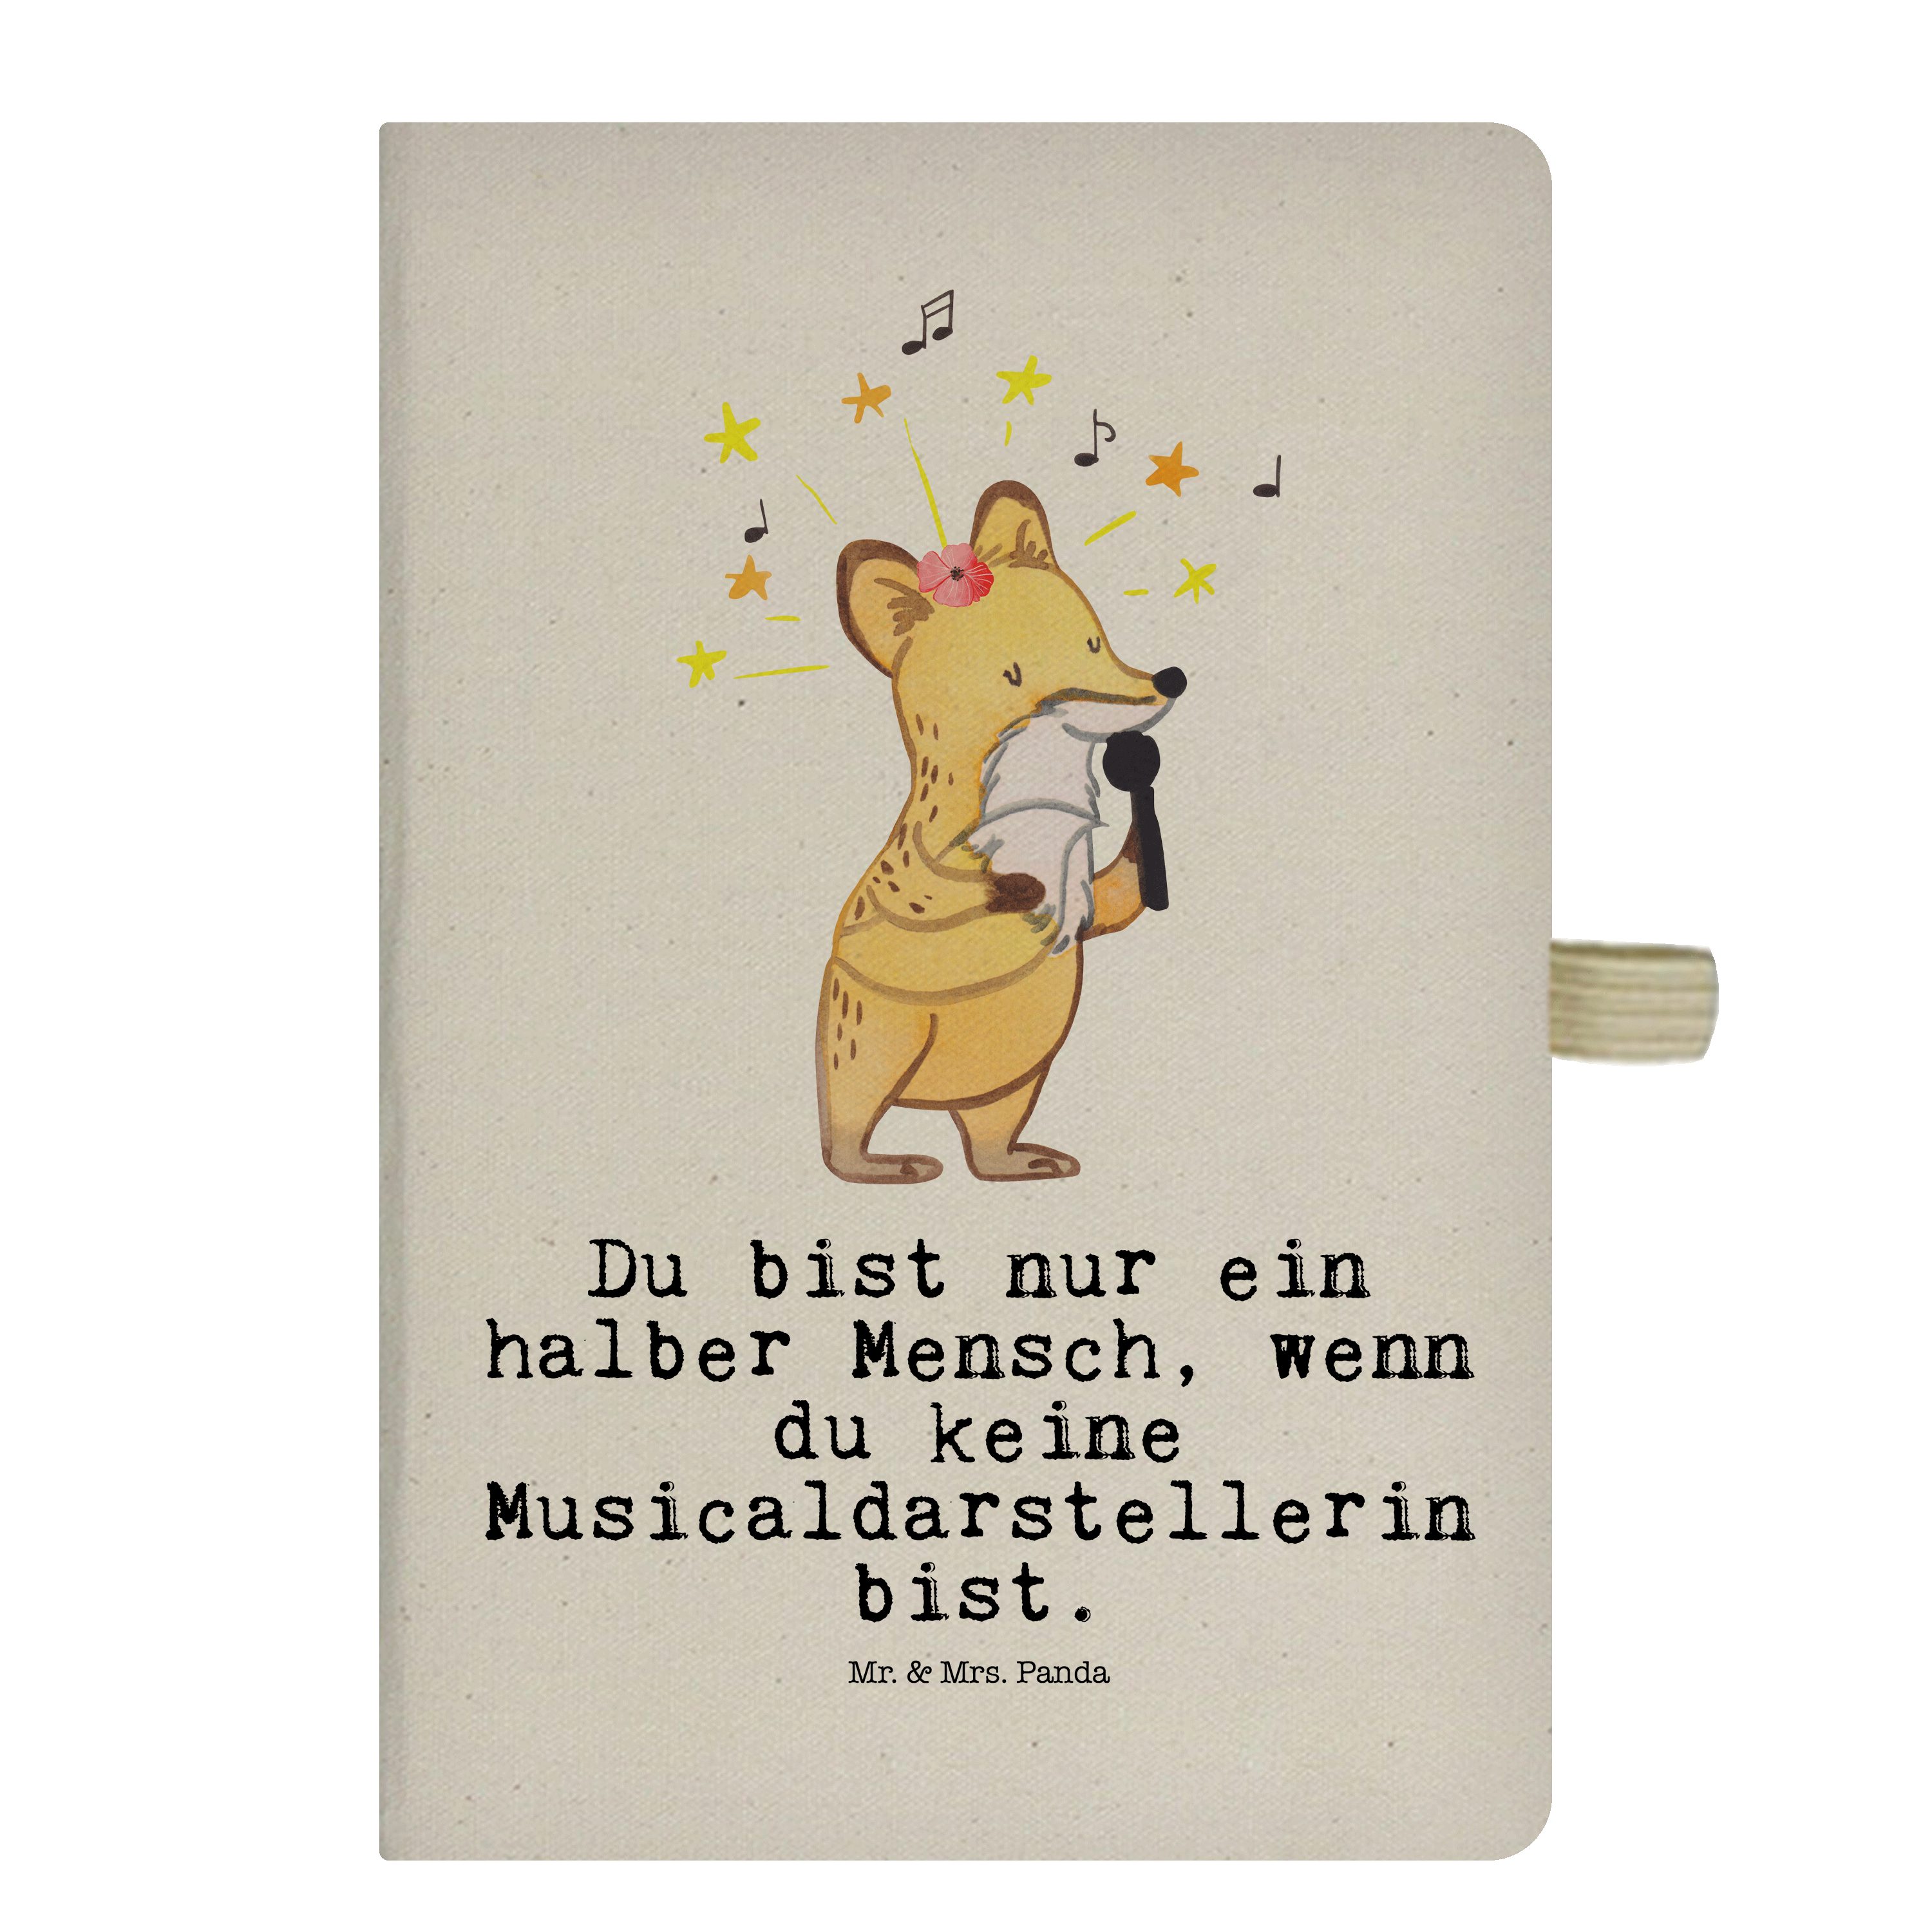 Mr. & Mrs. Panda Notizbuch Musicaldarstellerin mit Herz - Transparent - Geschenk, Schreibbuch, A Mr. & Mrs. Panda